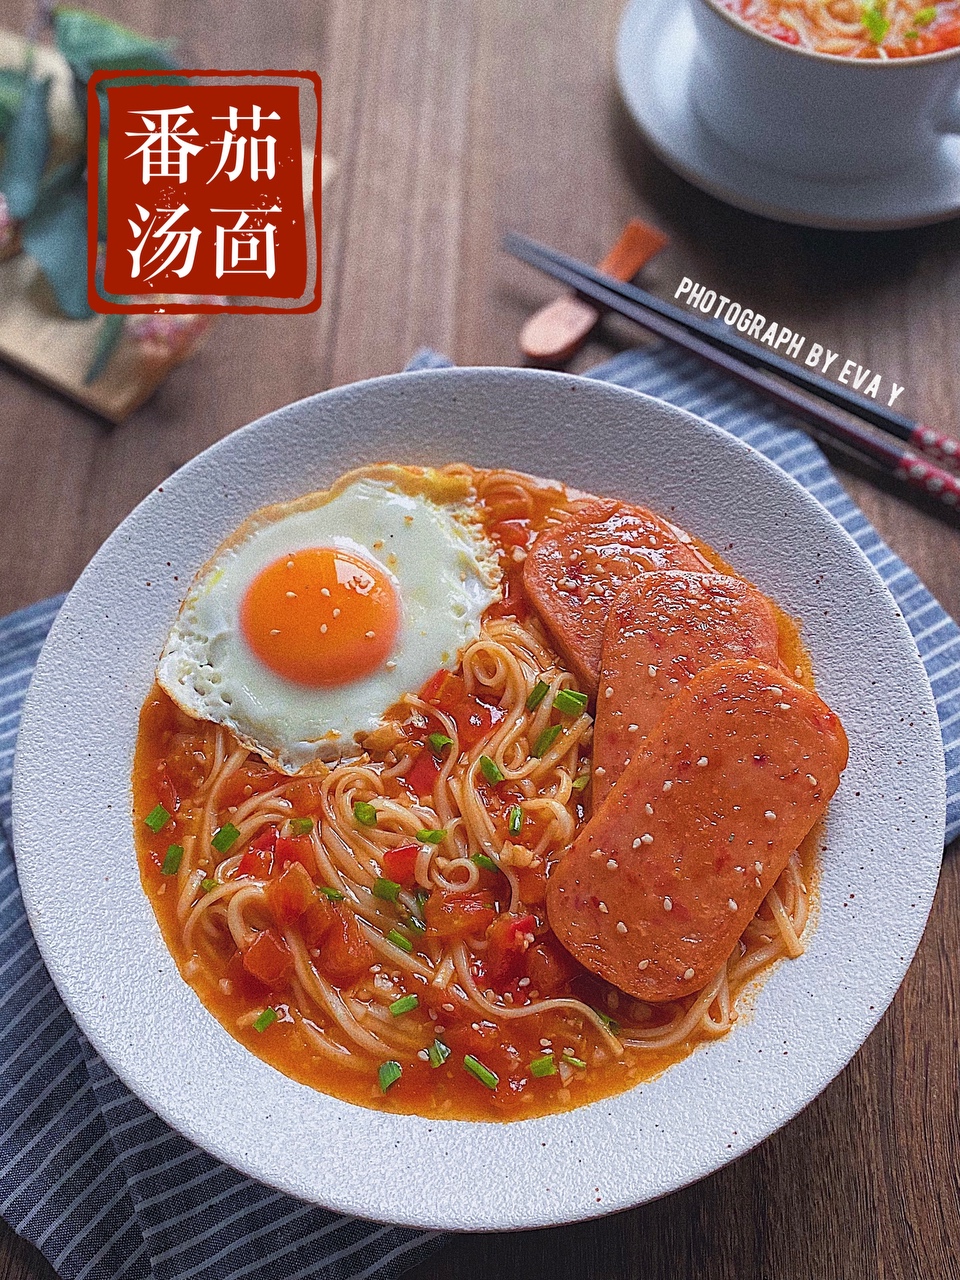 番茄浓汤捞面🔥绝绝子的中式早餐汤面✅的做法